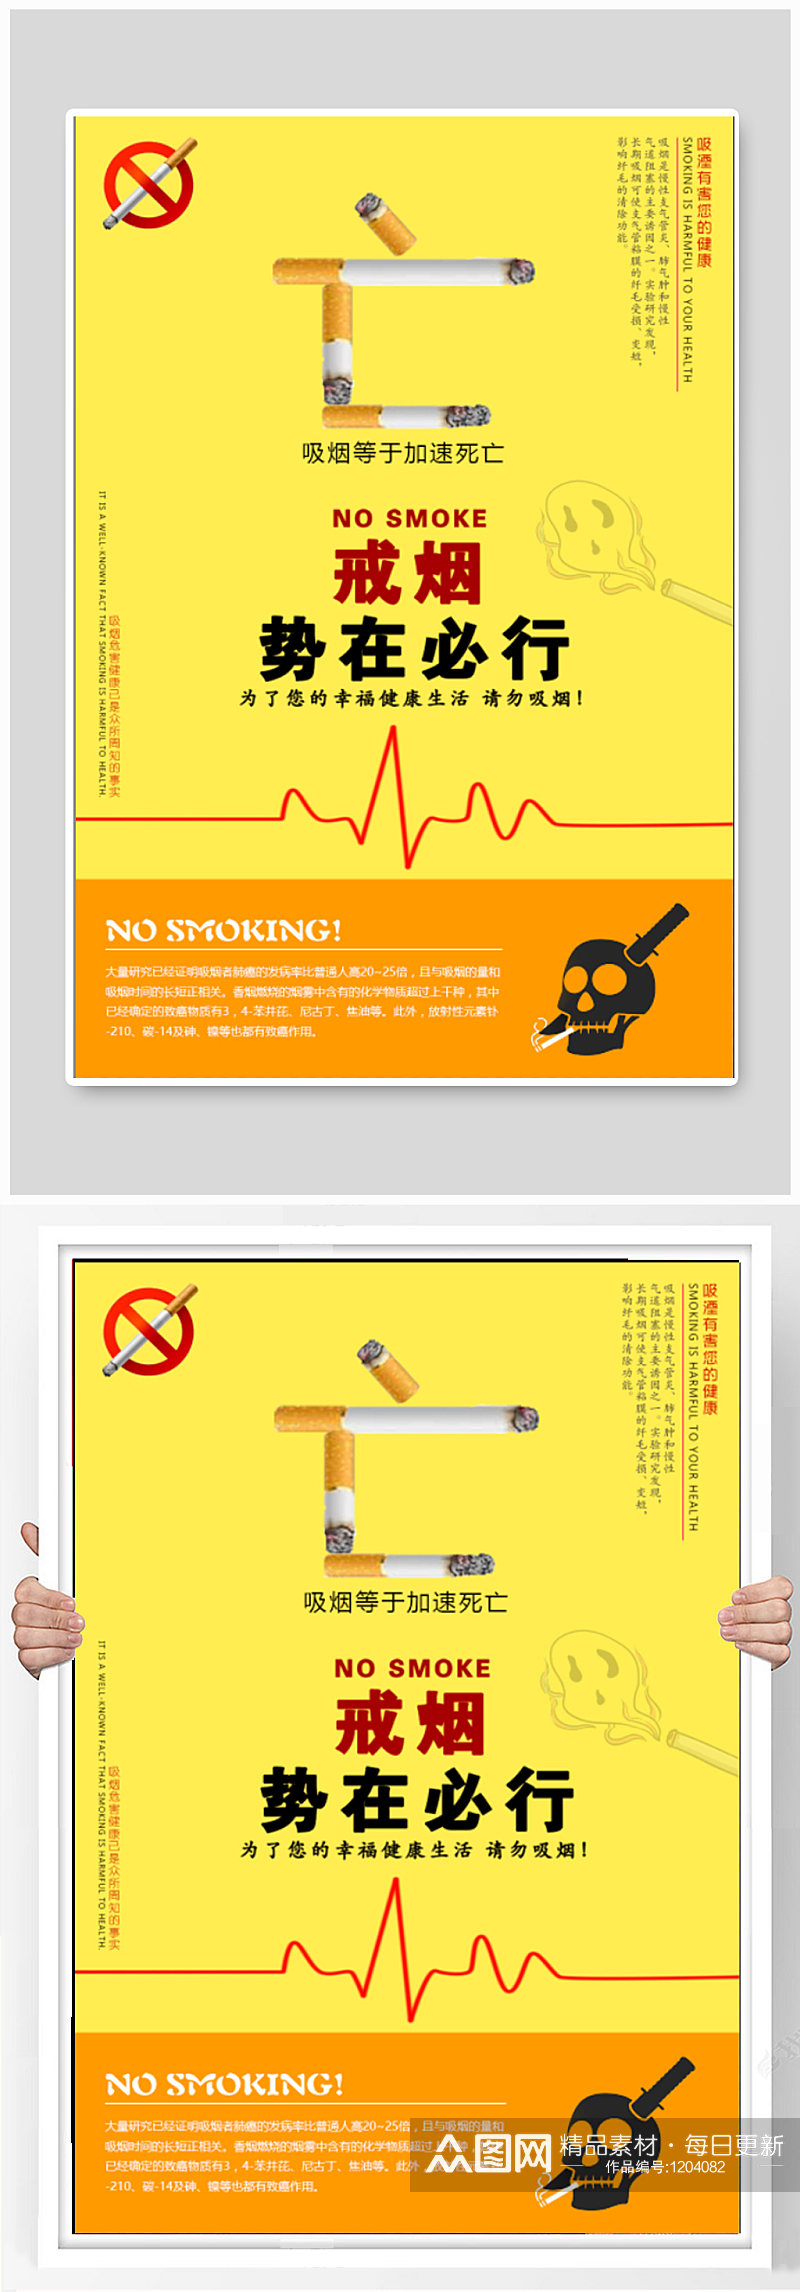 戒烟公益广告宣传海报素材